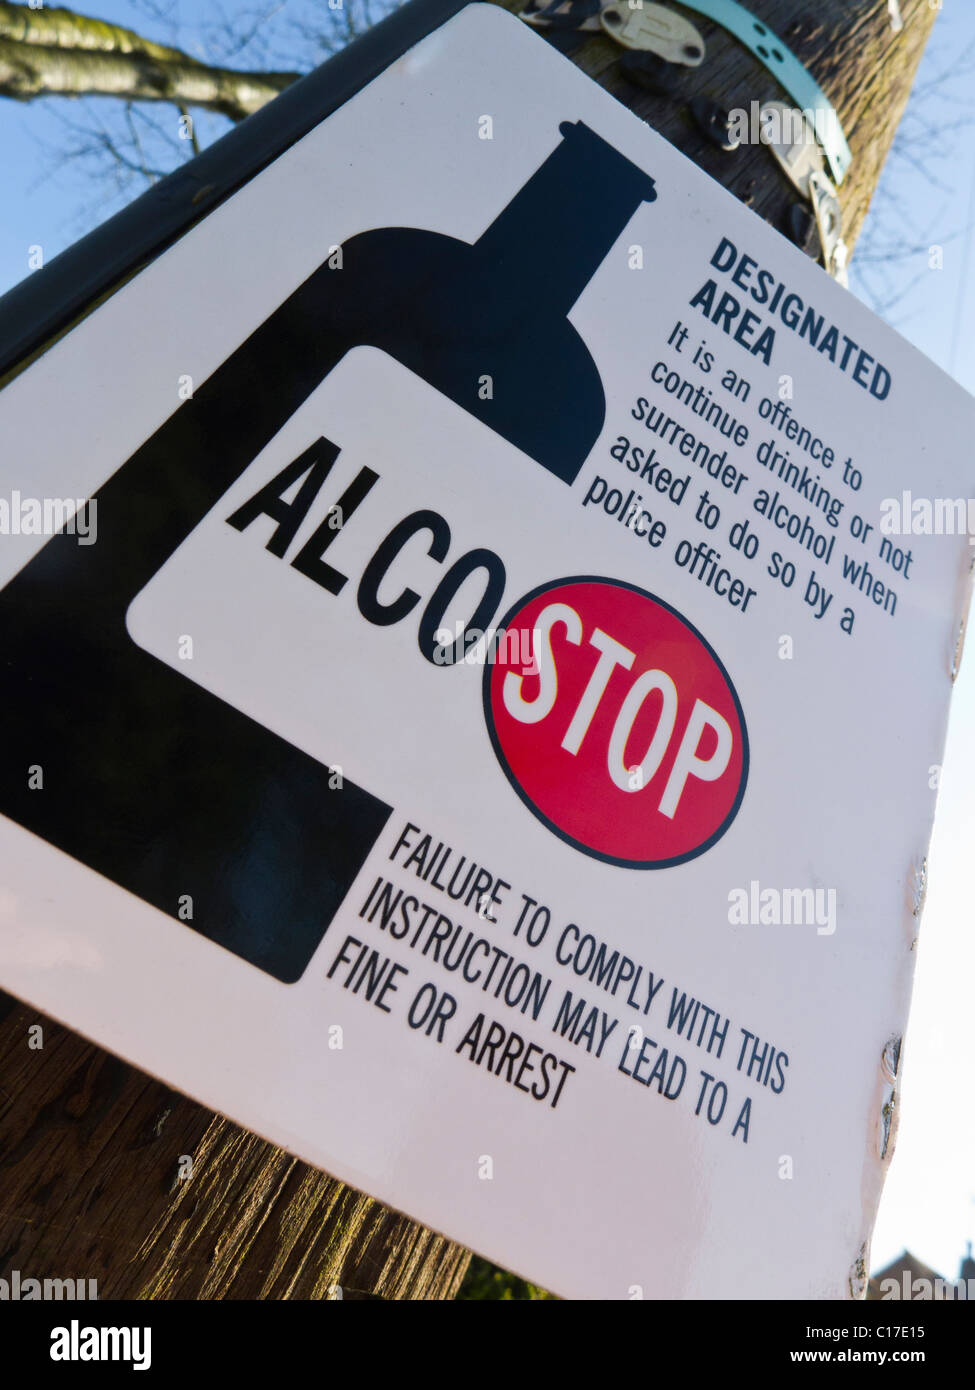 L'Ocal-STOP zone désignée signe en informant le public de ne pas consommer d'alcool dans ce domaine. Banque D'Images